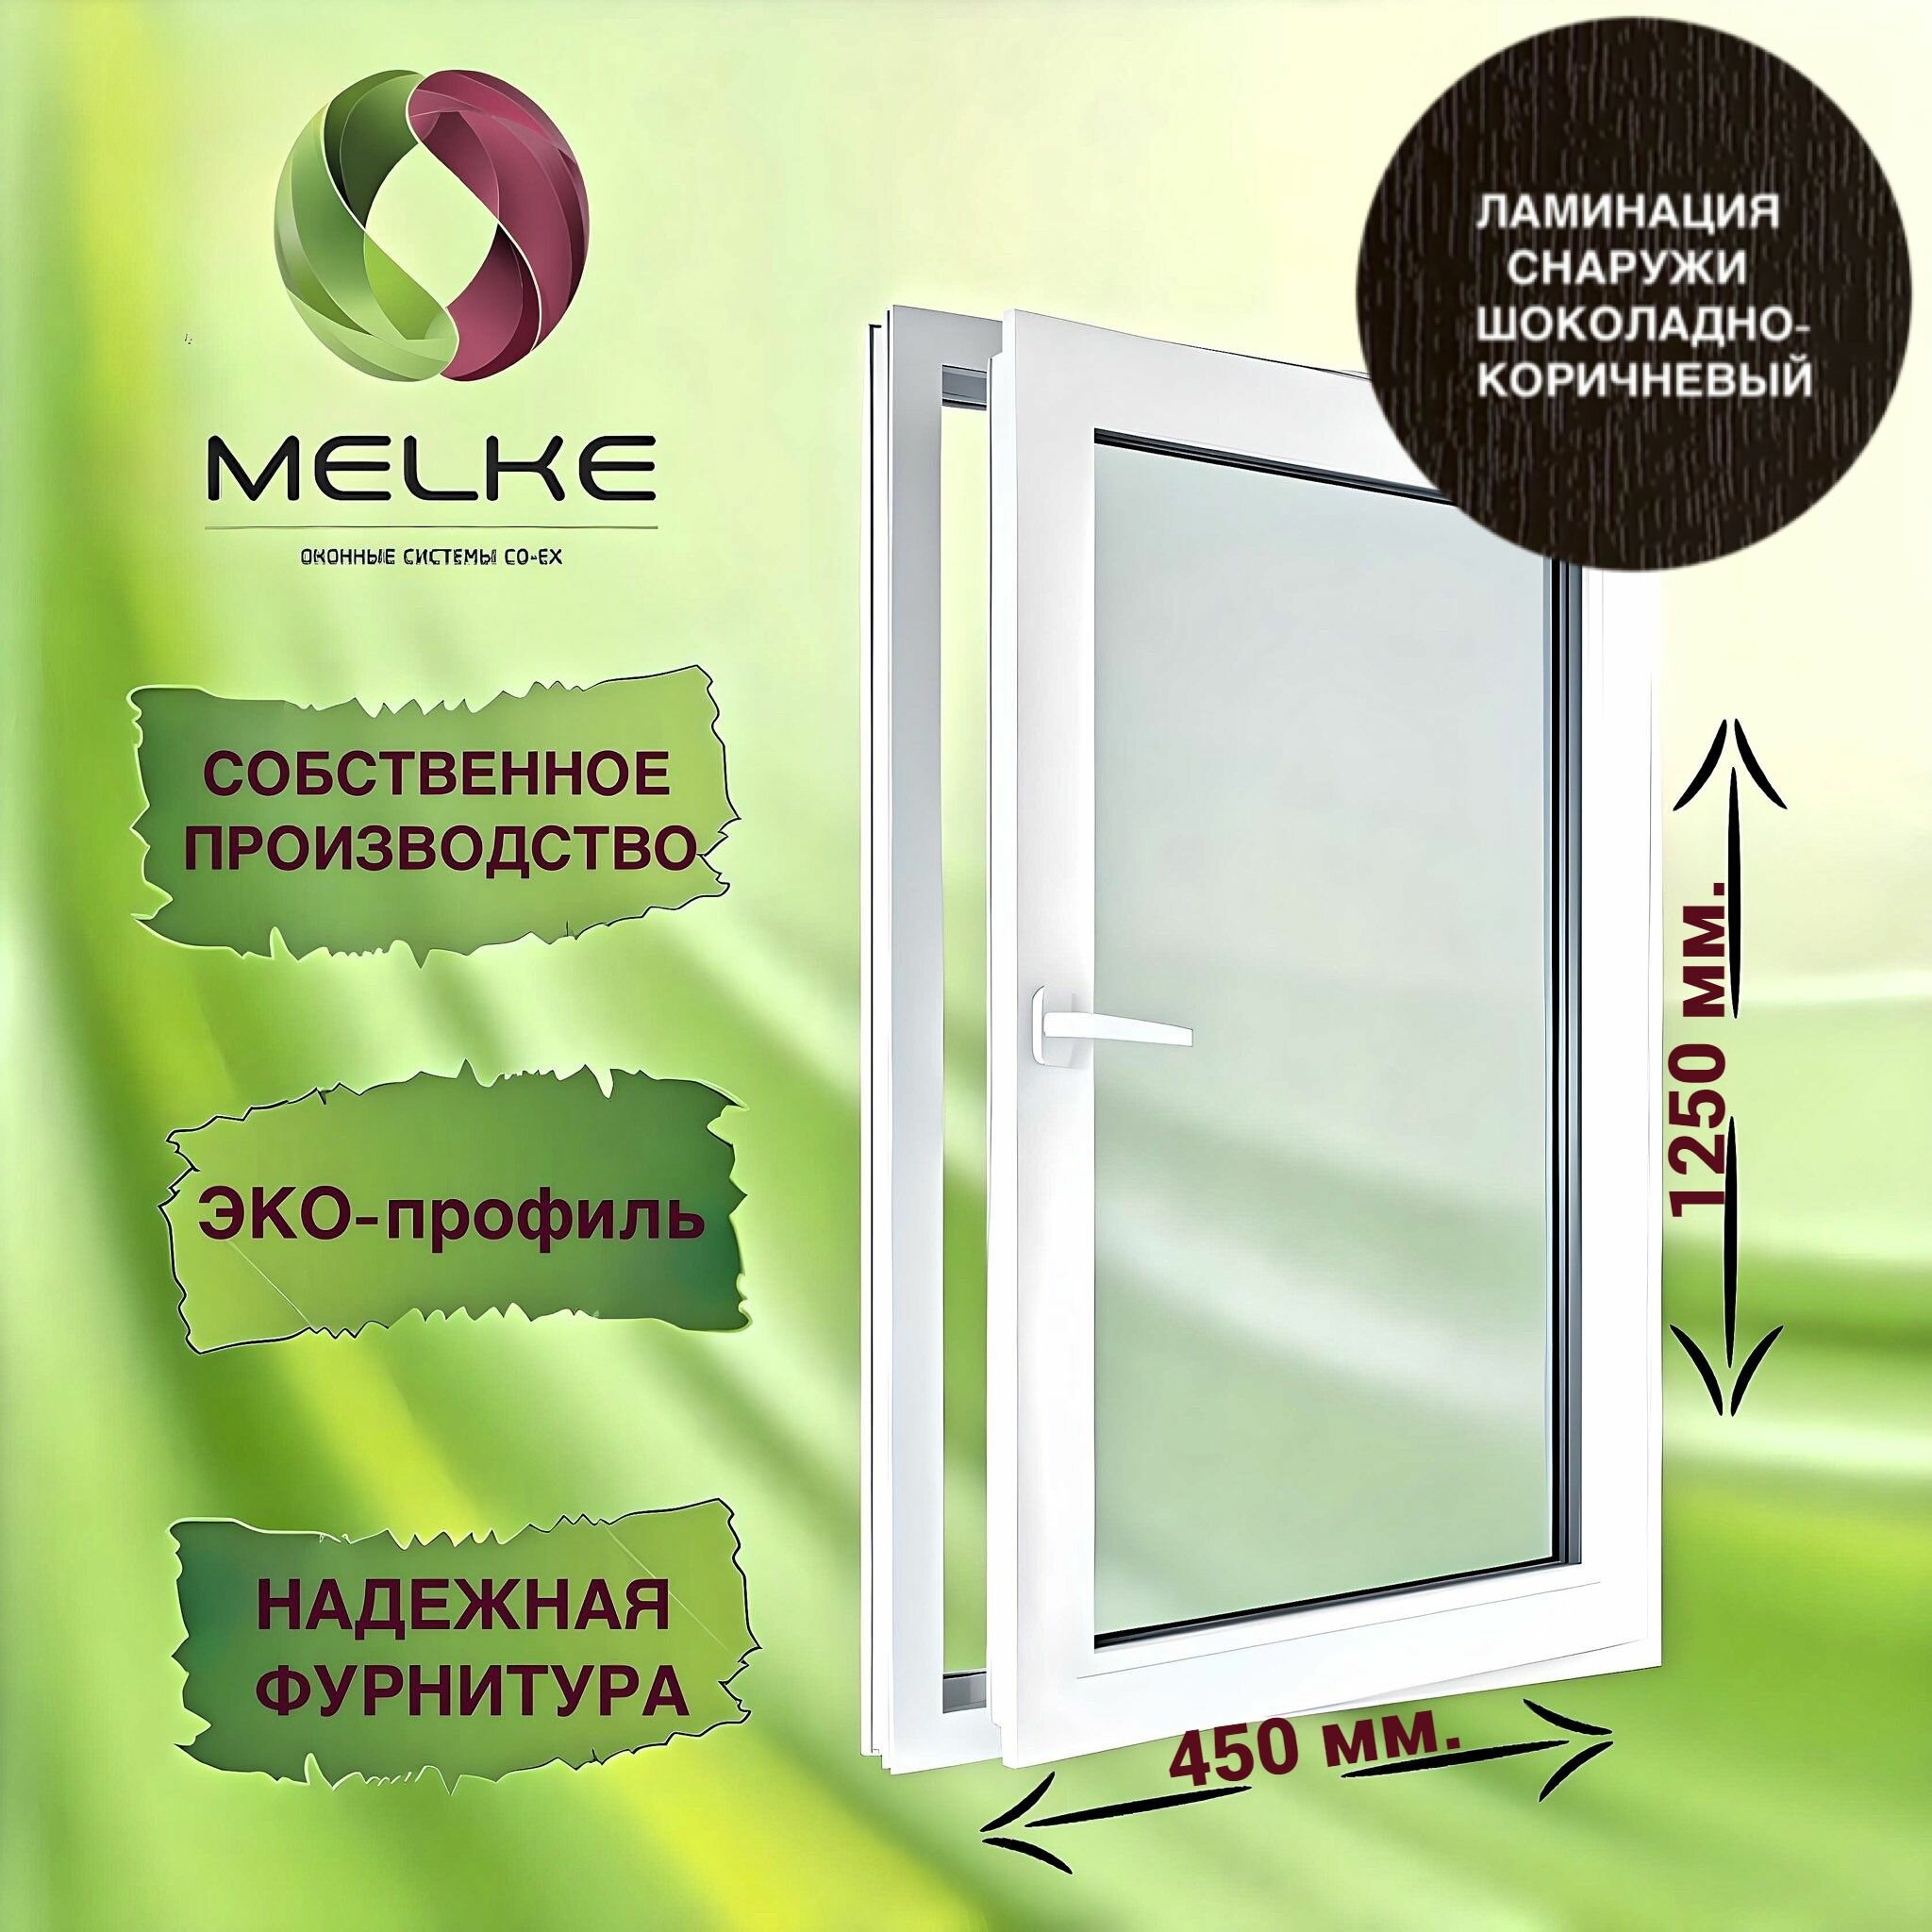 Окно 1250 х 450 мм, Melke 60 (Фурнитура FUTURUSS), правое одностворчатое, поворотно-откидное, цвет внешней ламинации Шоколадно-коричневый, 2-х камерный стеклопакет, 3 стекла